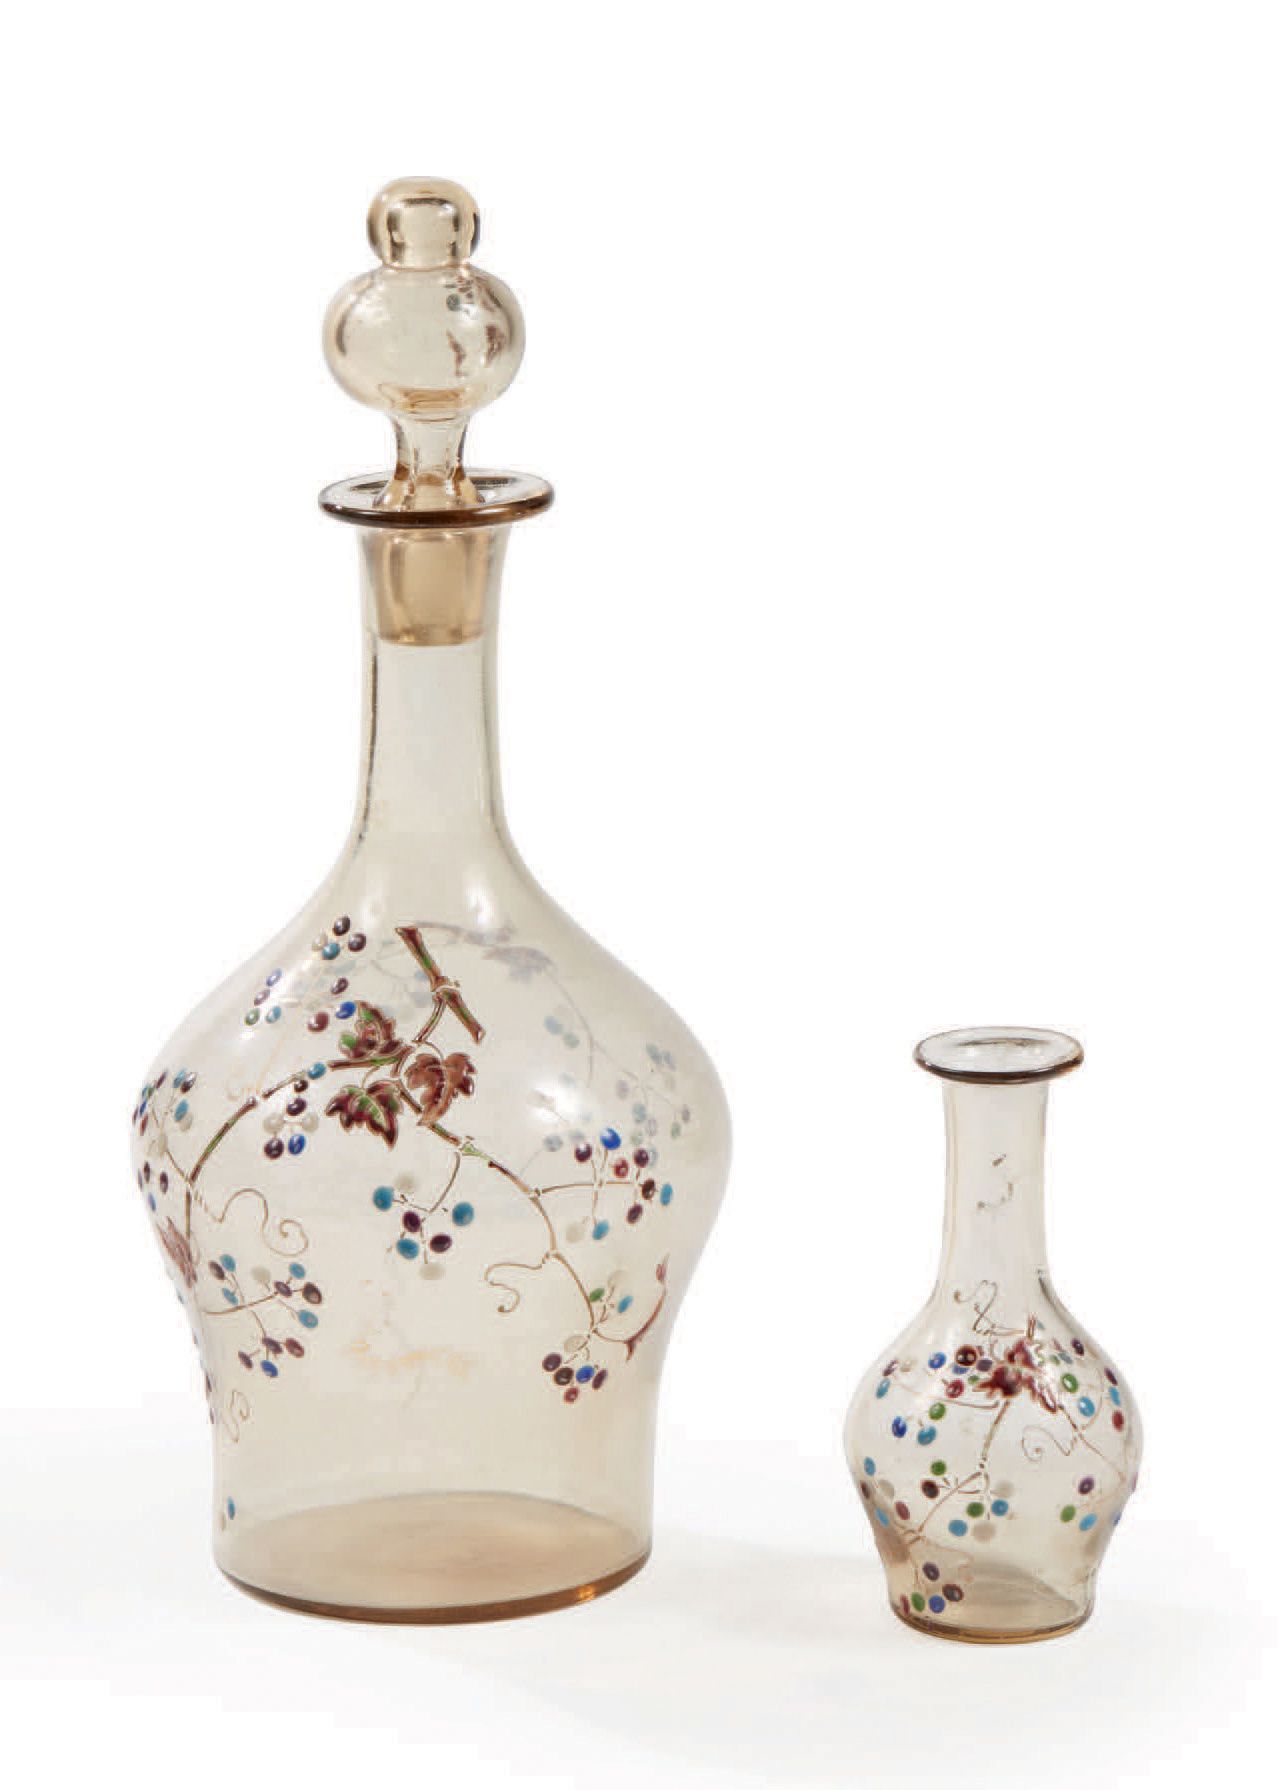 Émile GALLÉ (1846-1904) 
Buntglaskaraffe und kleine Vase mit polychromem Emailde&hellip;